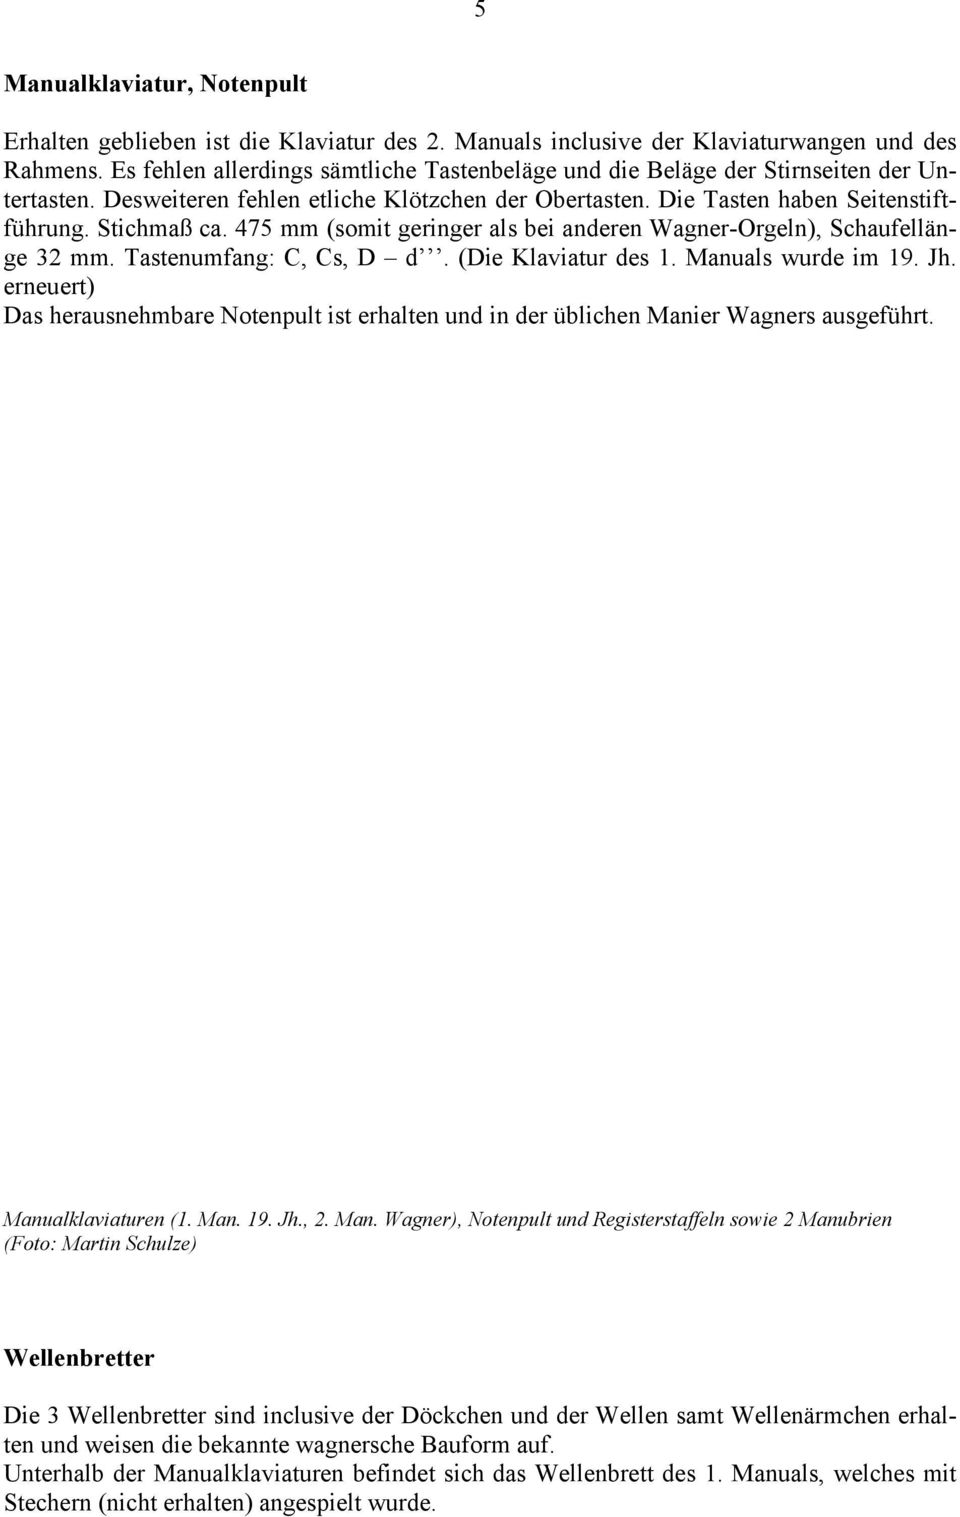 475 mm (somit geringer als bei anderen Wagner-Orgeln), Schaufellänge 32 mm. Tastenumfang: C, Cs, D d. (Die Klaviatur des 1. Manuals wurde im 19. Jh.